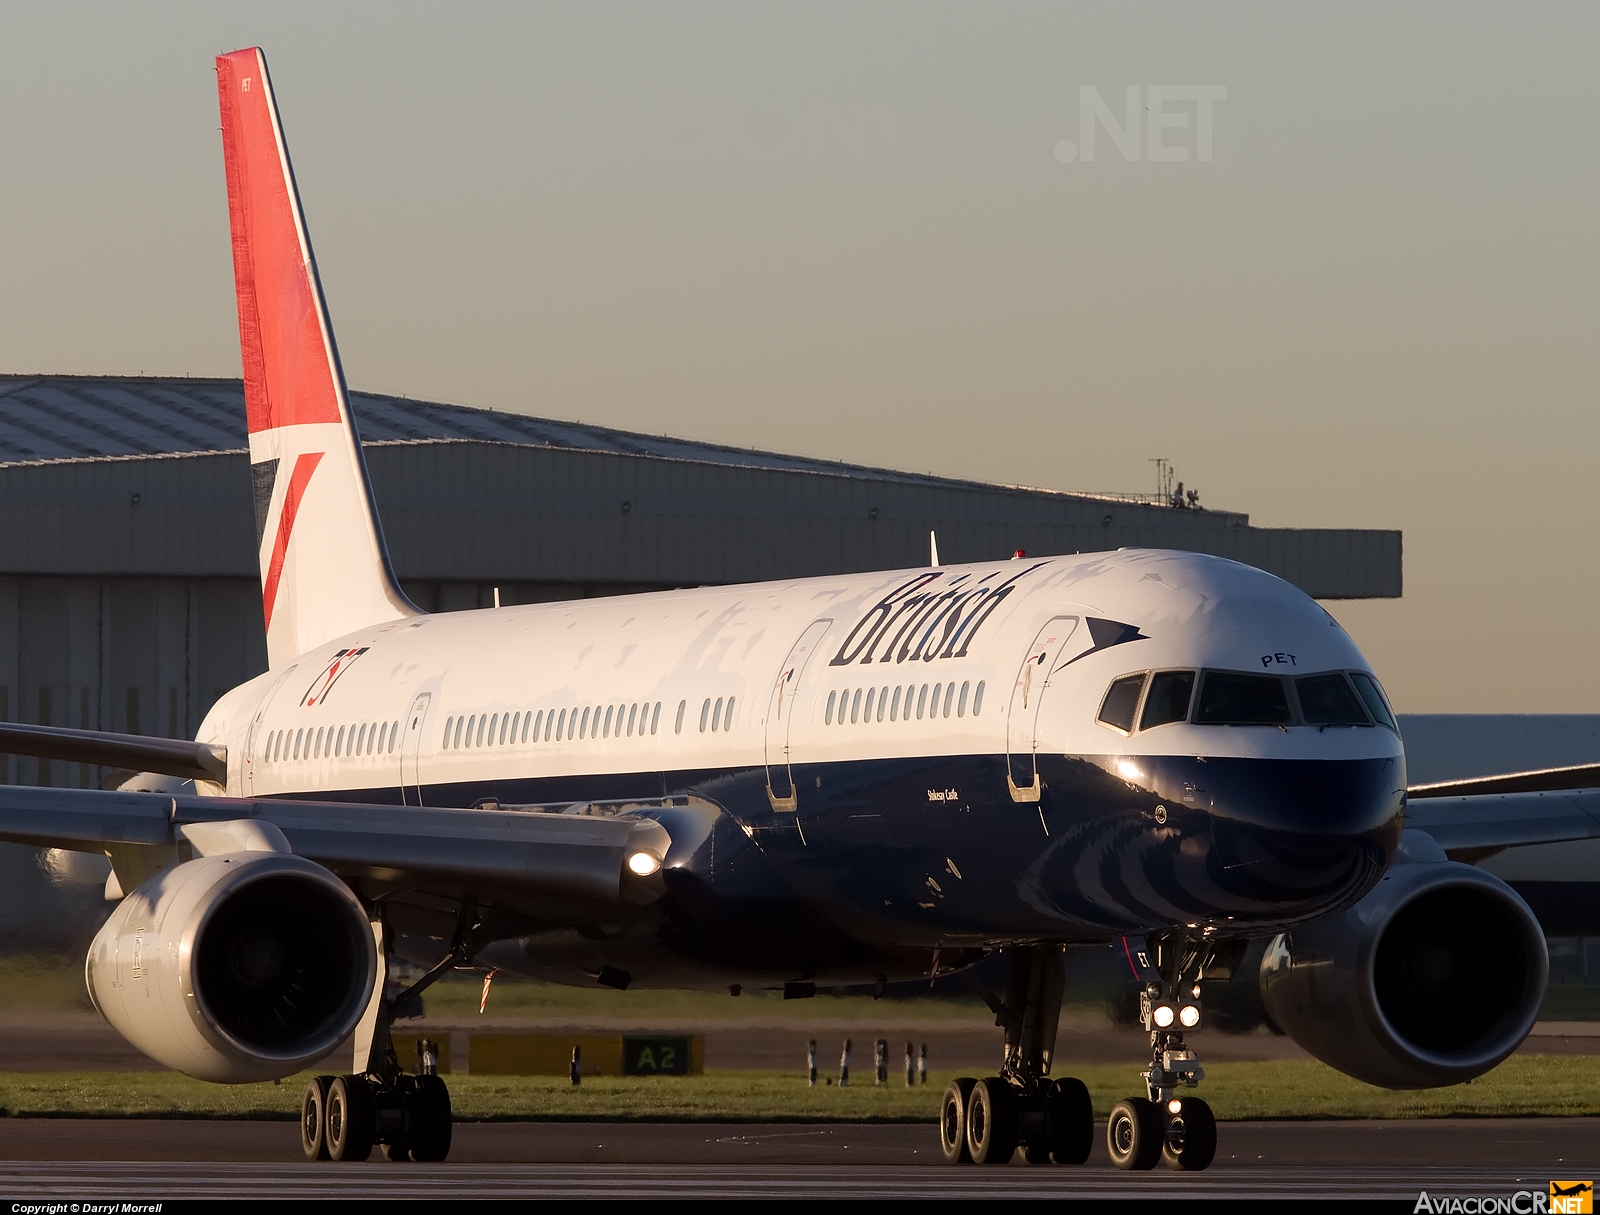 G-CPET - Boeing 757-236 - British Airways